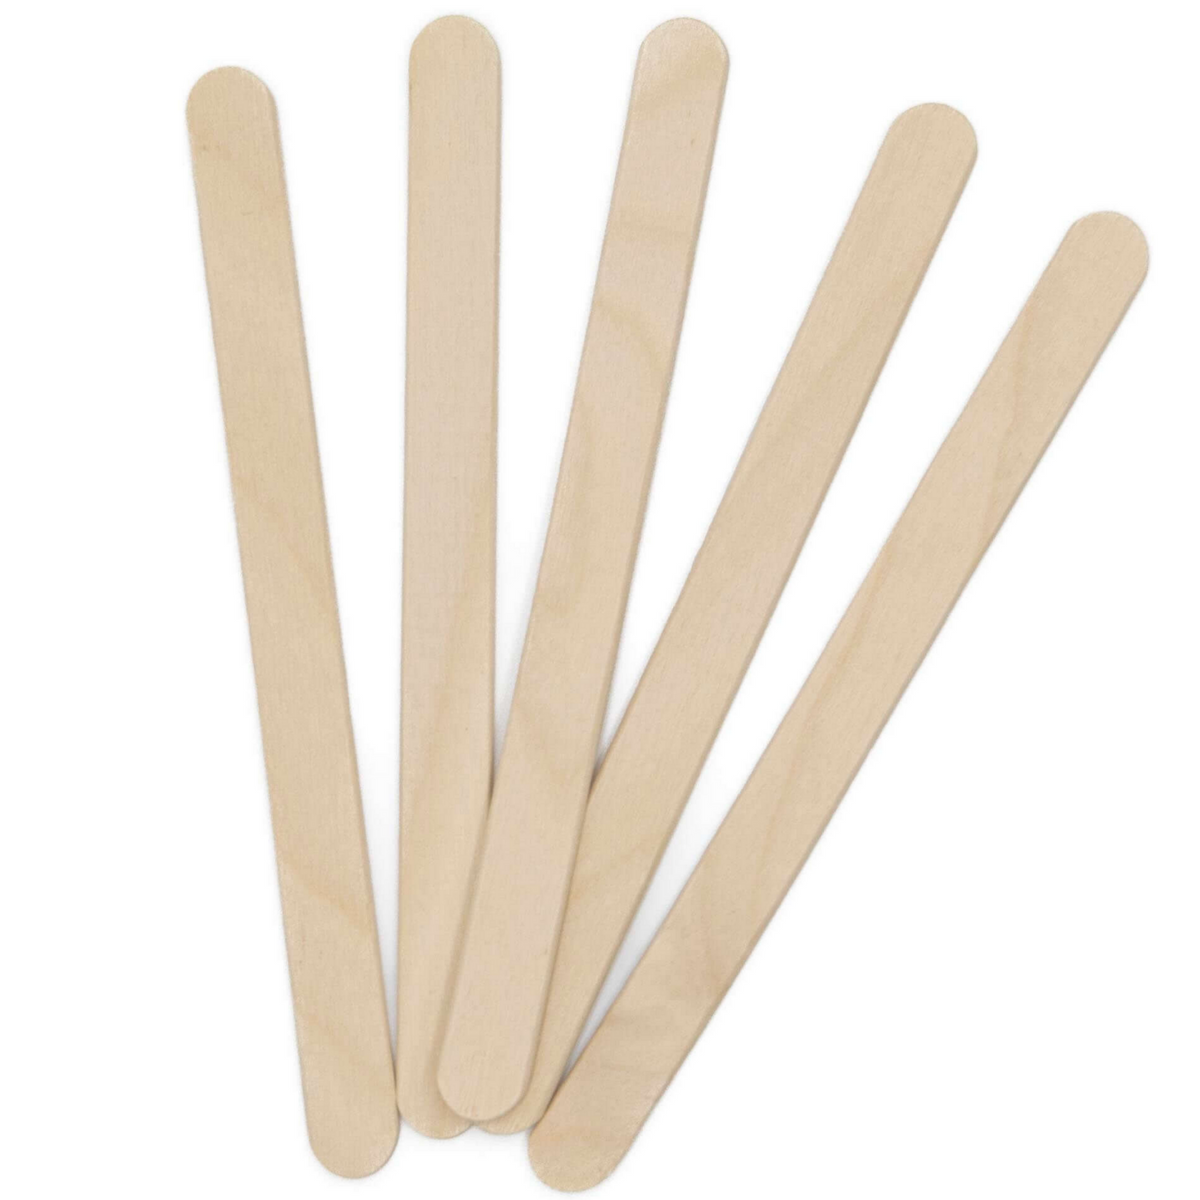 2 x 100/pk Dukal Small Wax Spatulas Waxing Sticks Wood Applicators 4-1/2 x  3/8